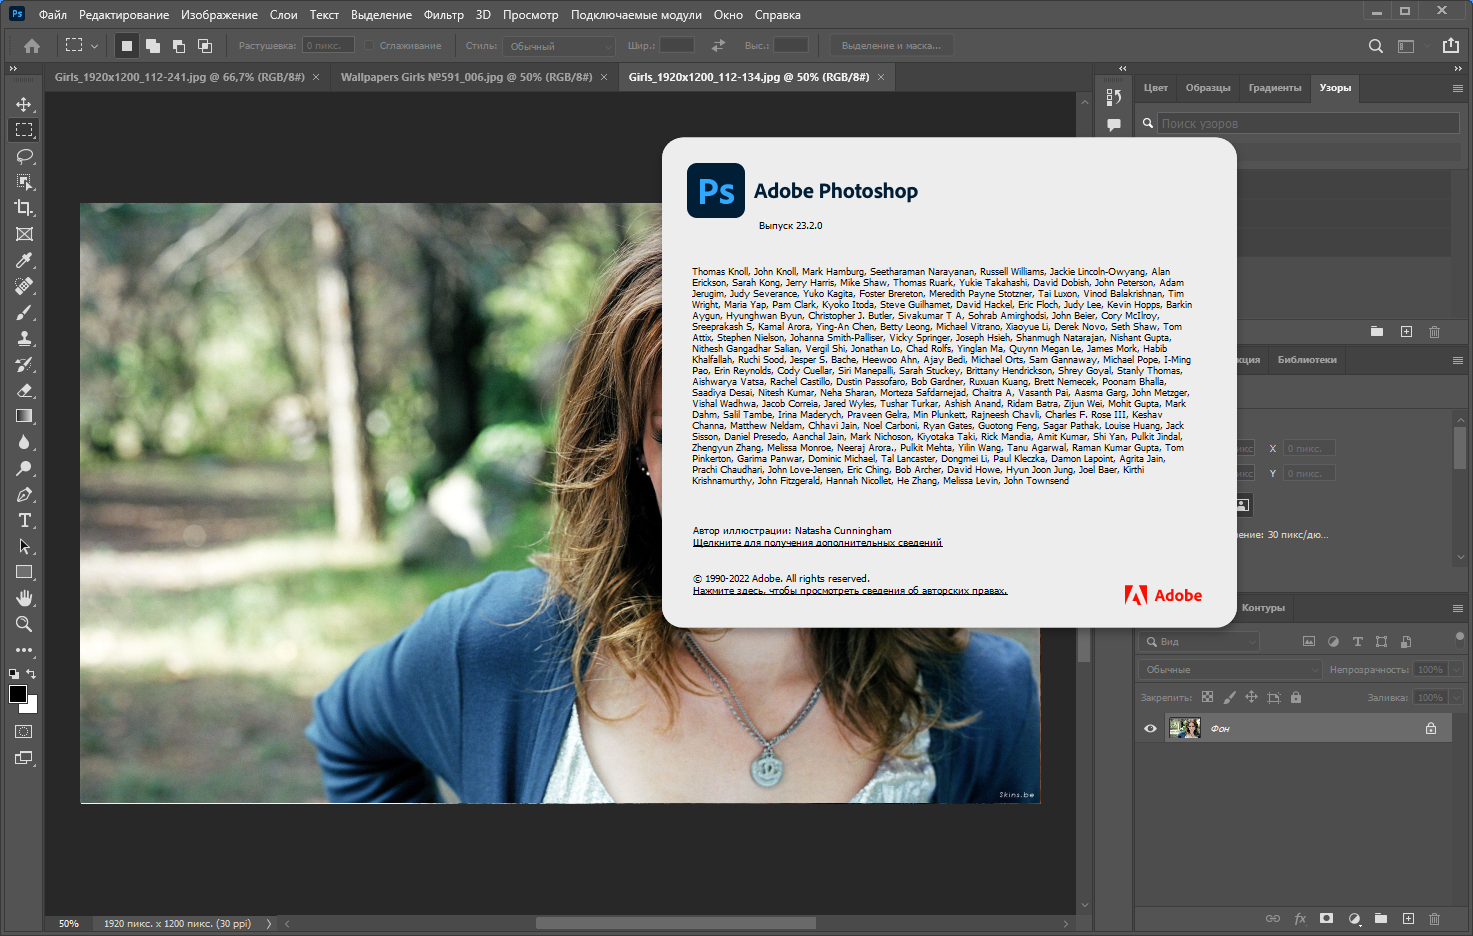 Adobe Photoshop 2022 23.2.0.277 RePack by KpoJIuK [Multi/Ru]